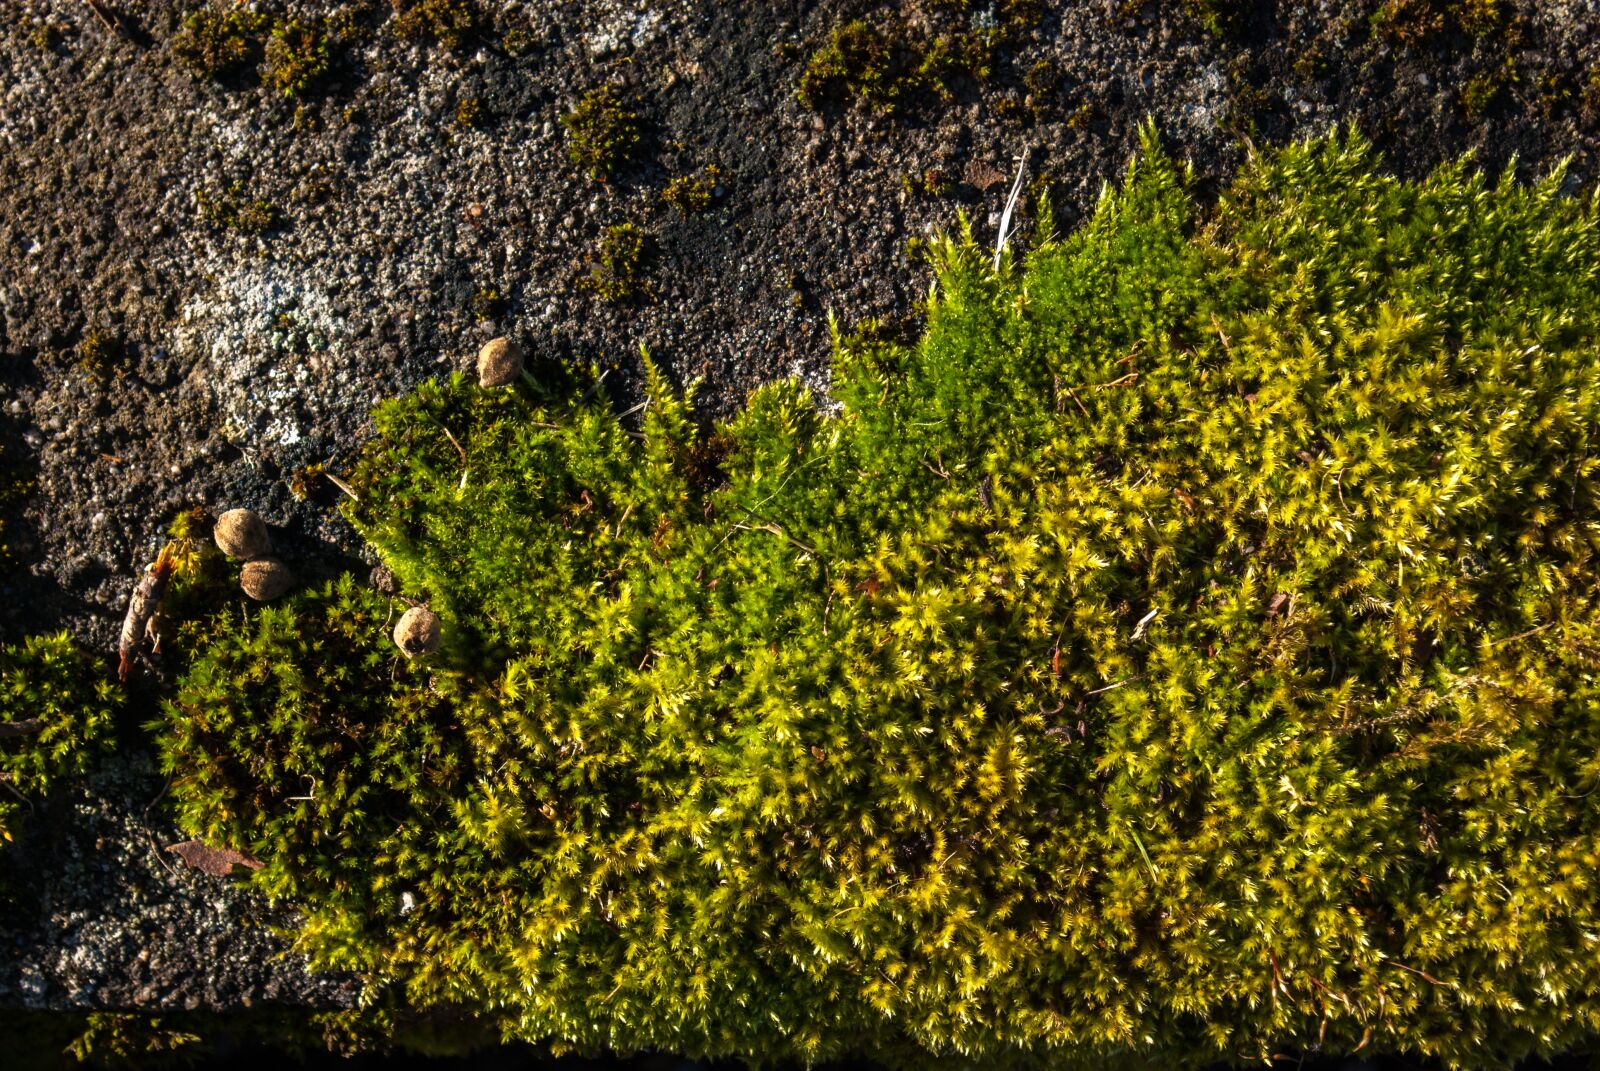 Pentax smc DA 18-55mm F3.5-5.6 AL sample photo. Lichen, moss, stone photography